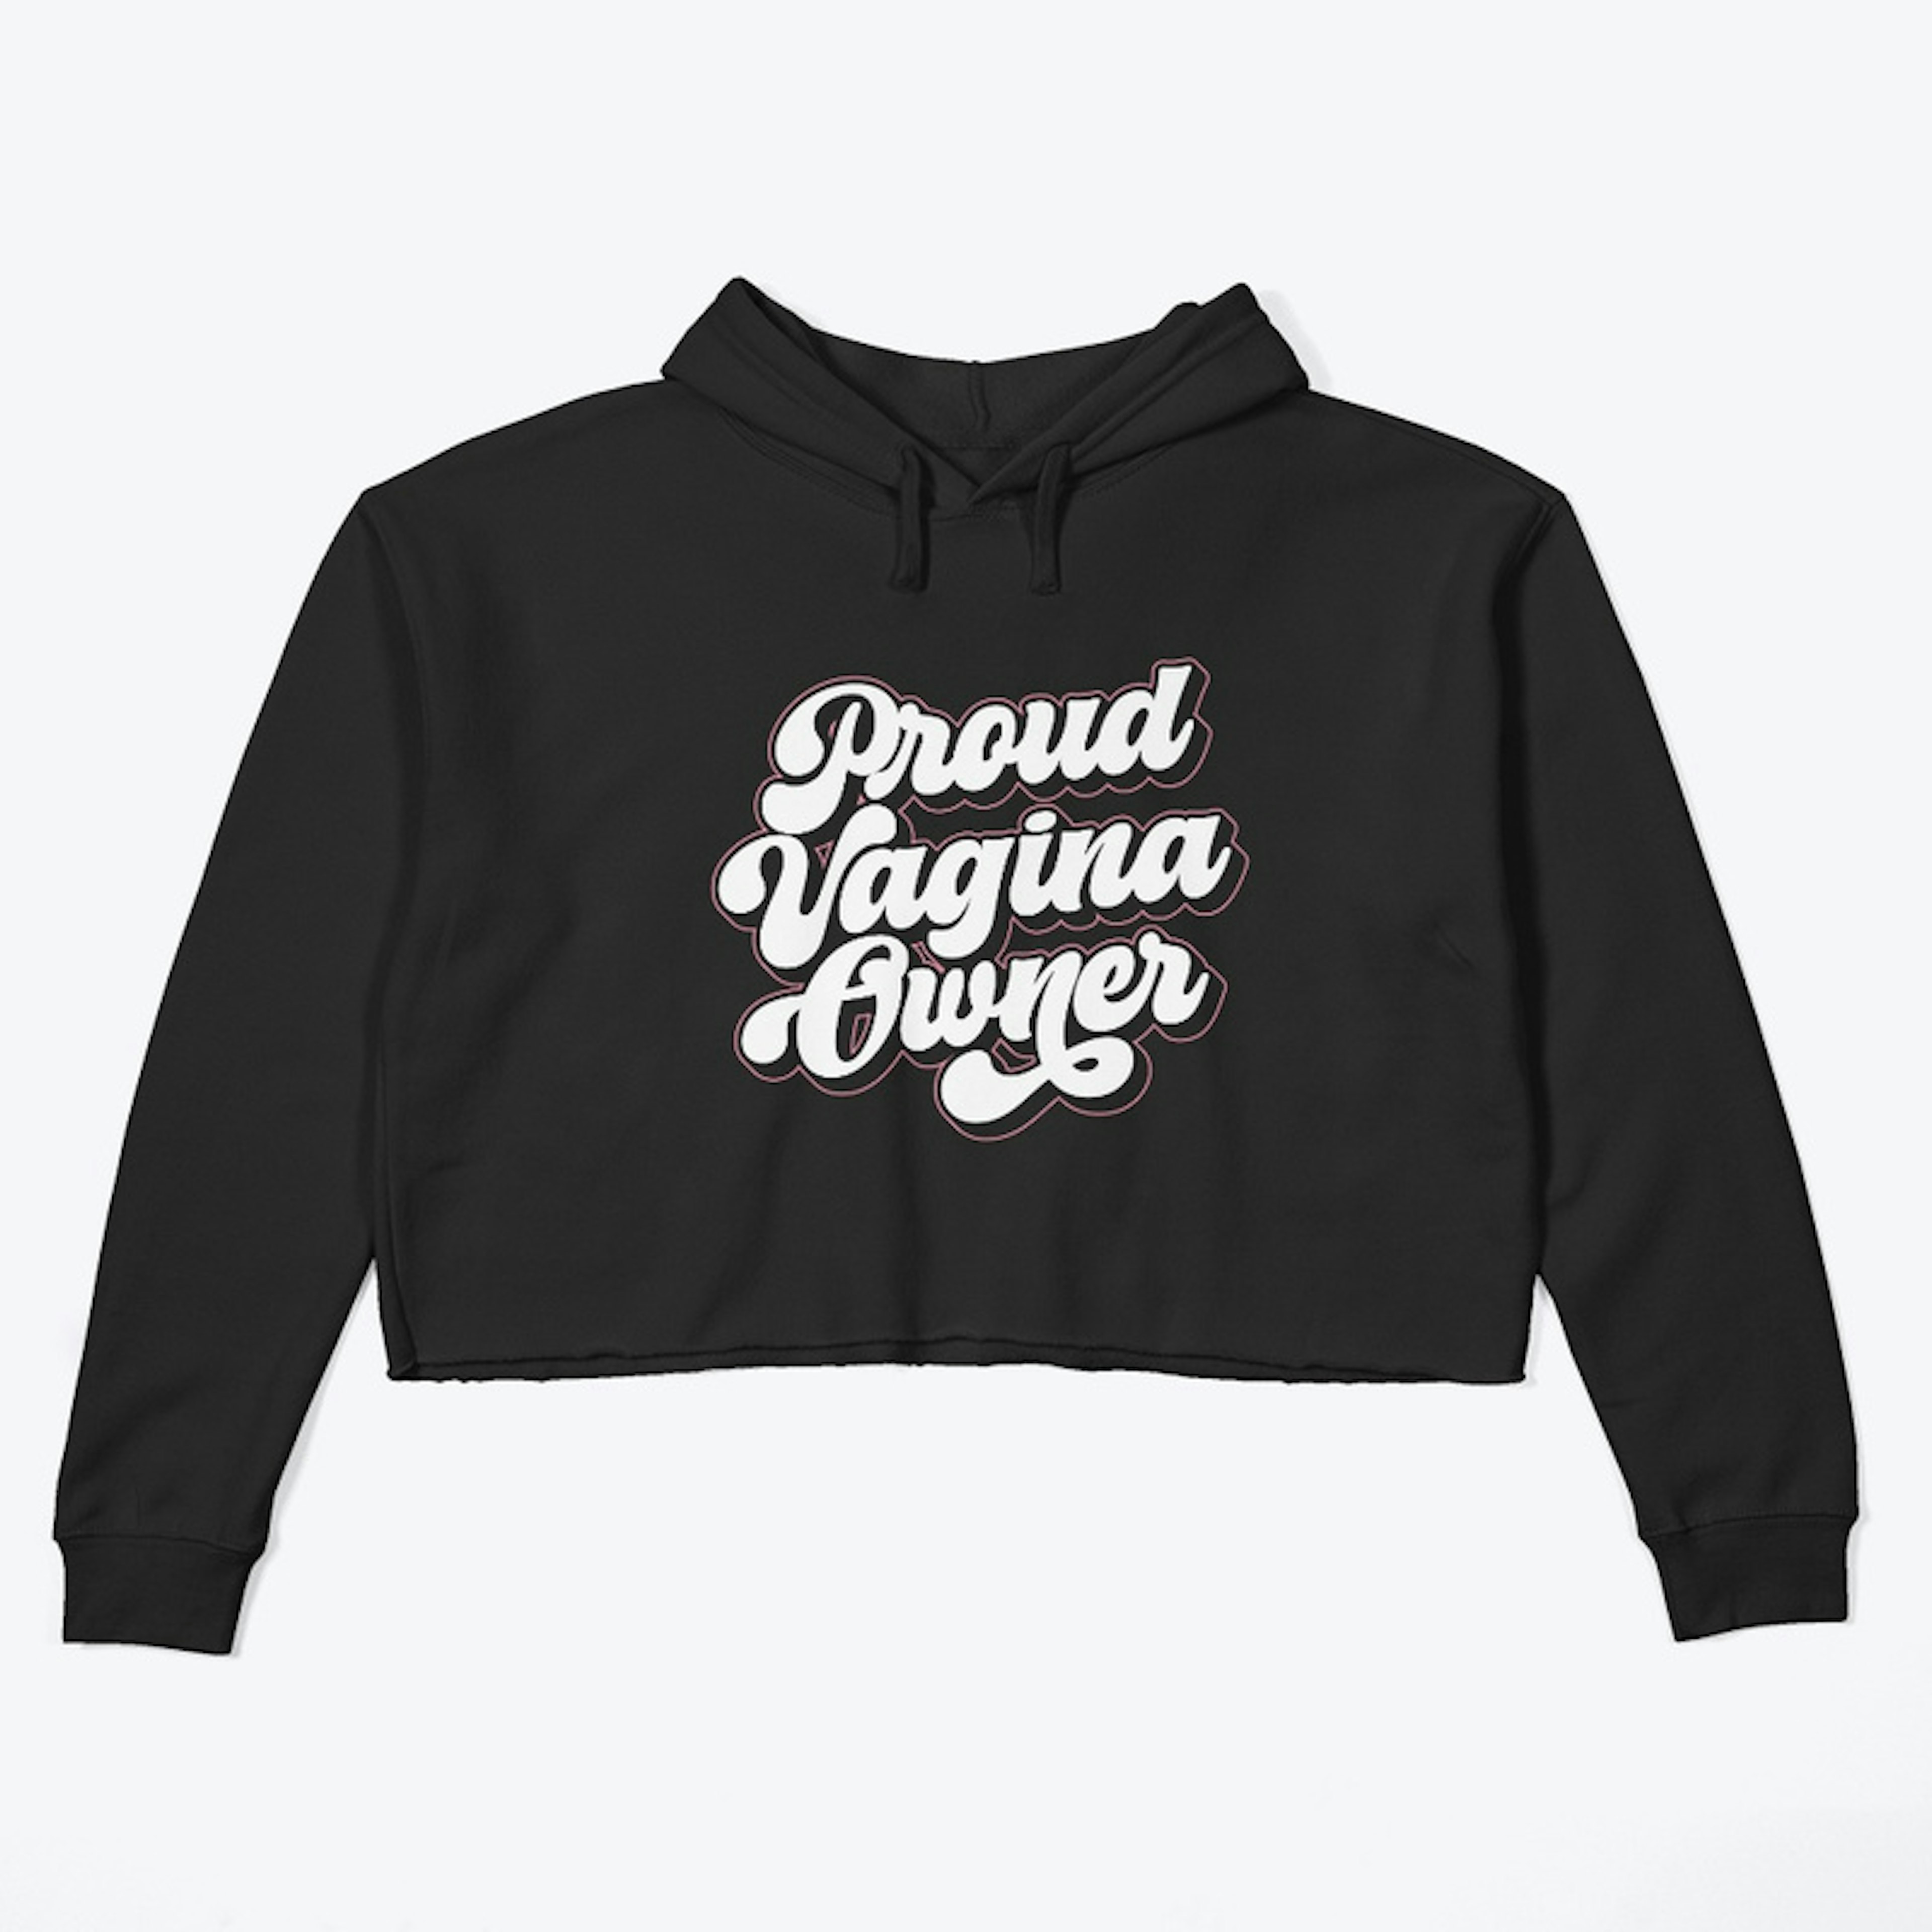 Proud Vagina Owner